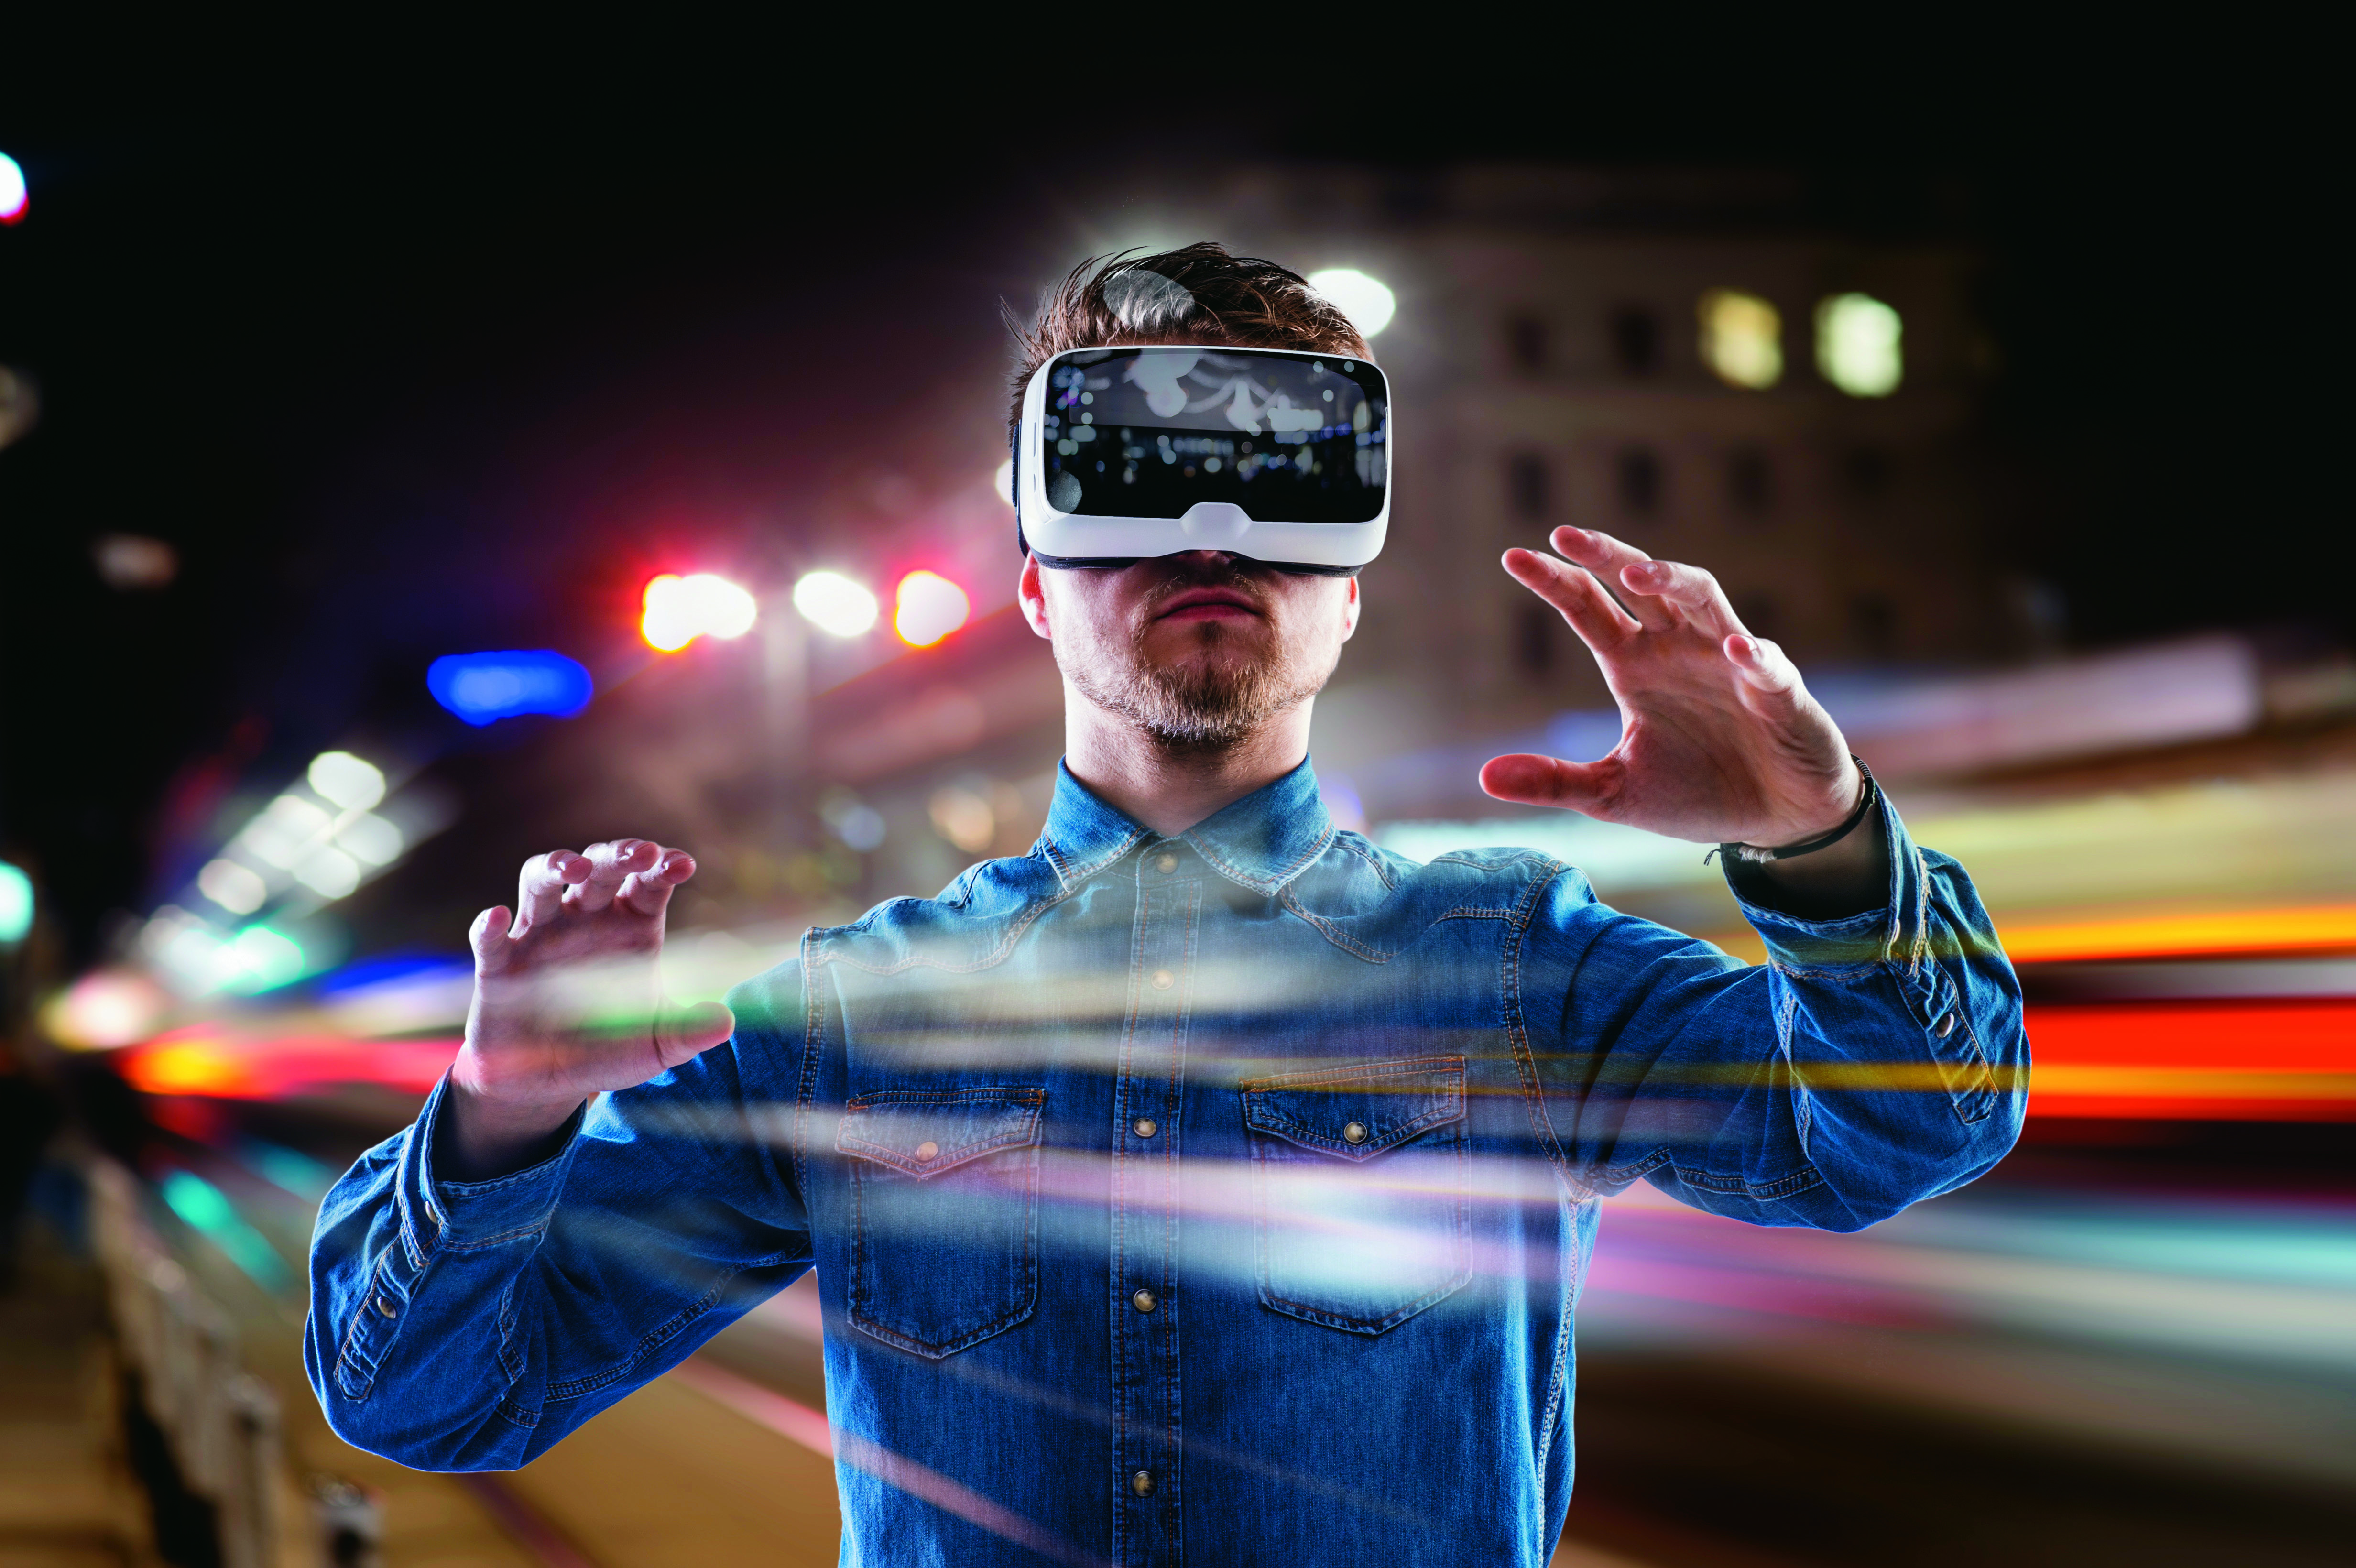 VR技術已逐漸被重視及廣泛應用，將成為未來科技嶄新領域。